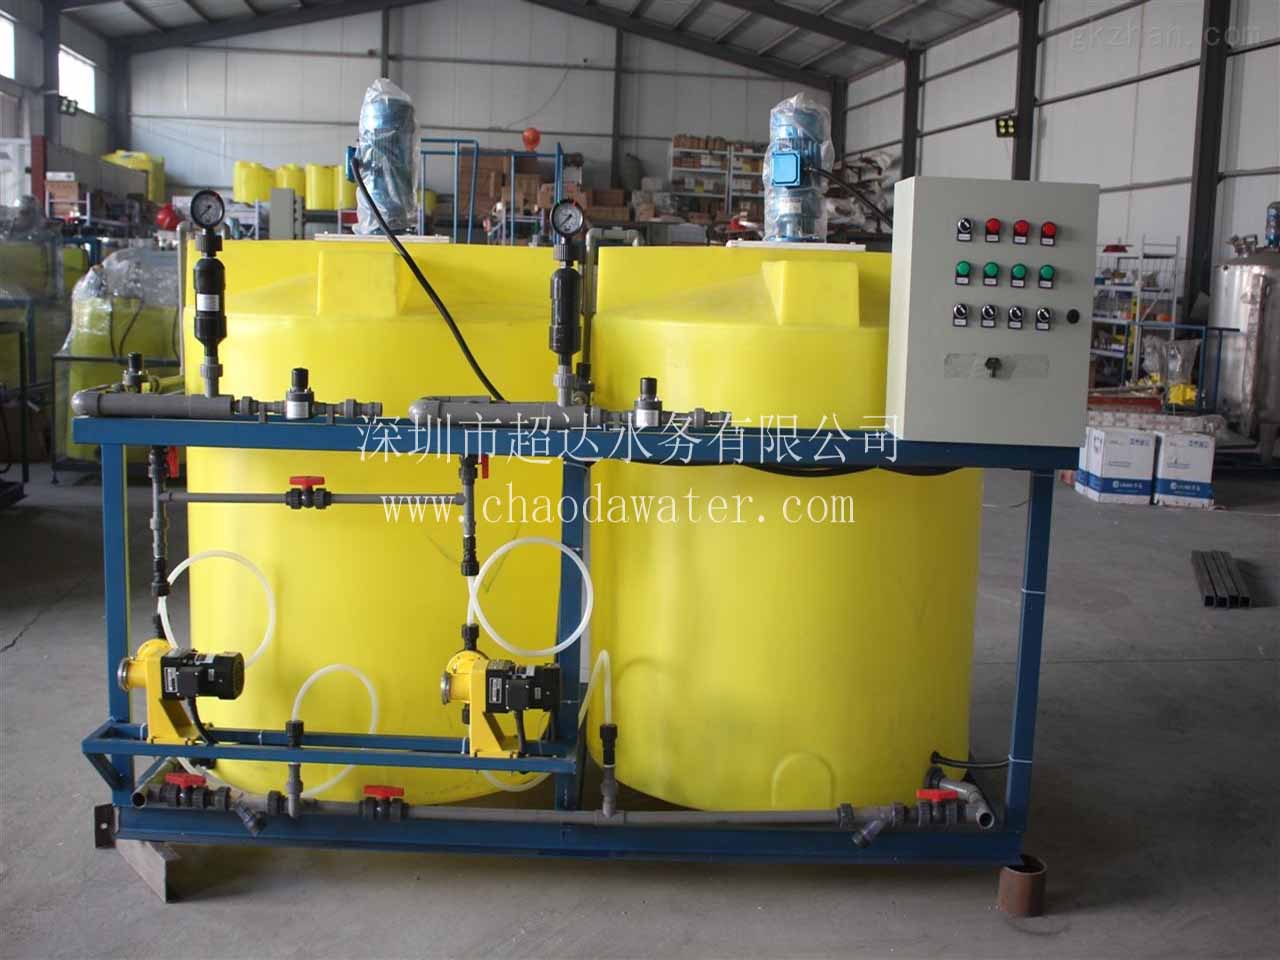 高锰酸钾投加系统运用在水厂的作用